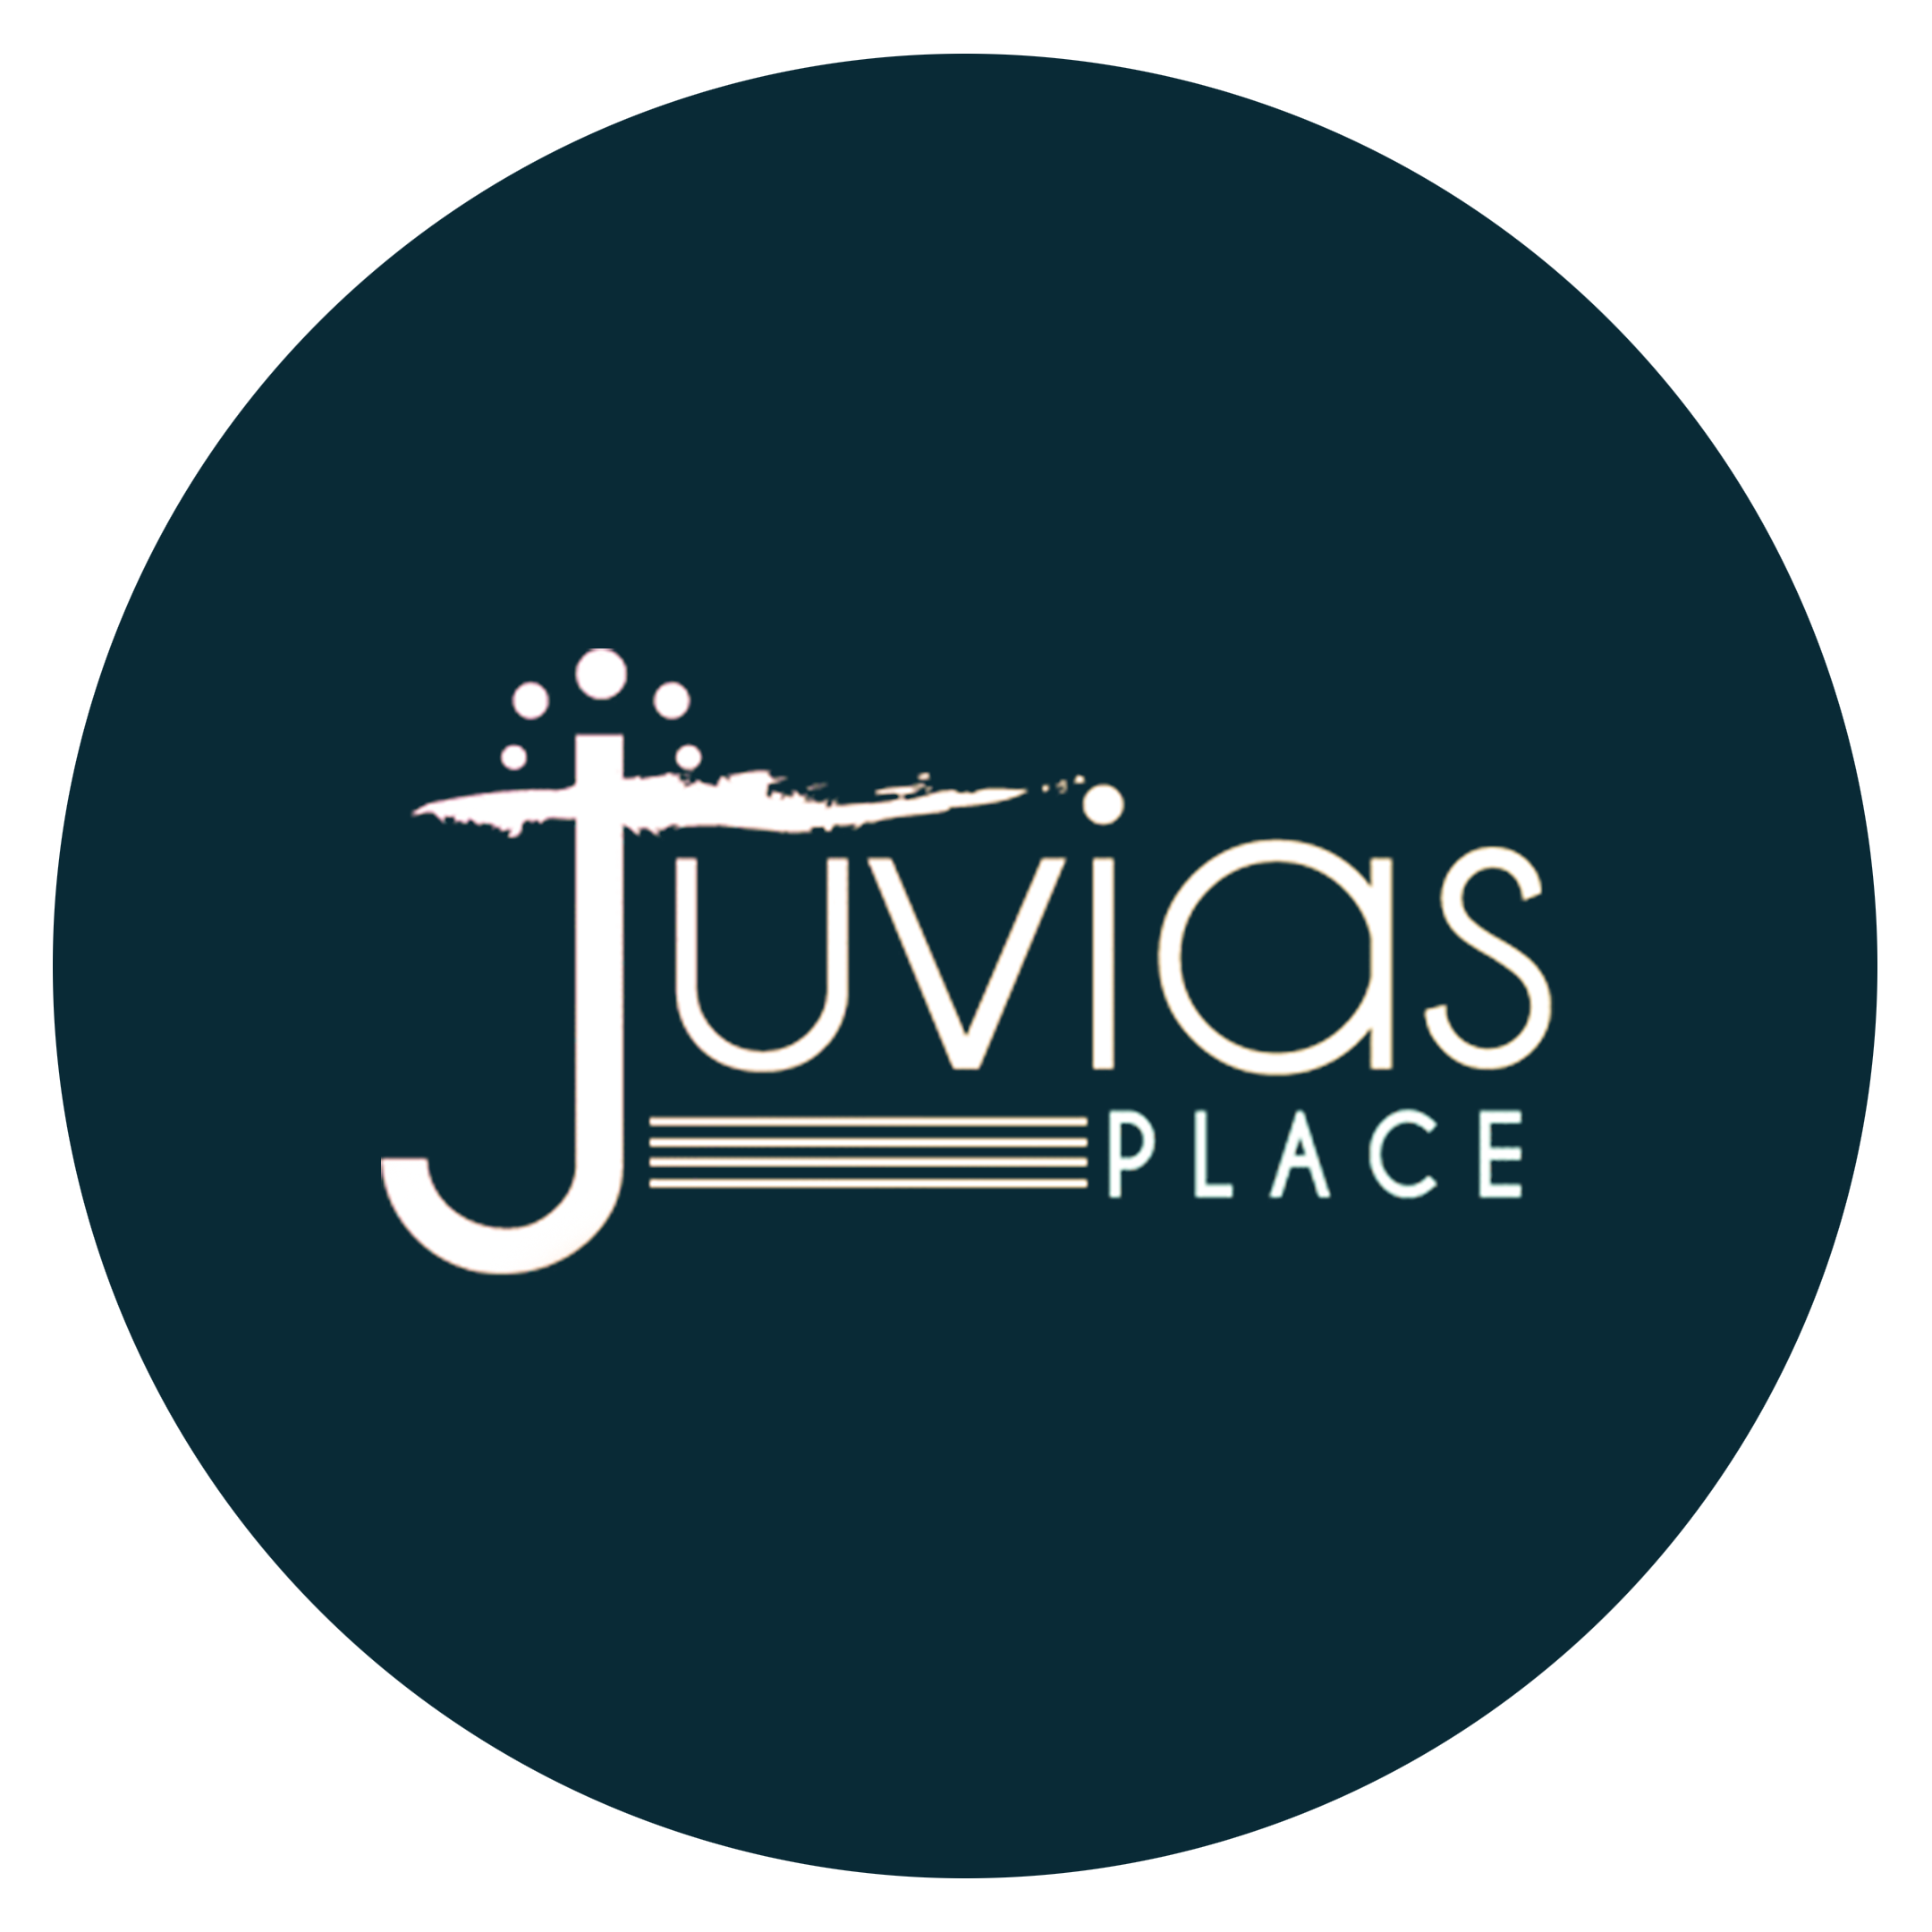 Juvias Place